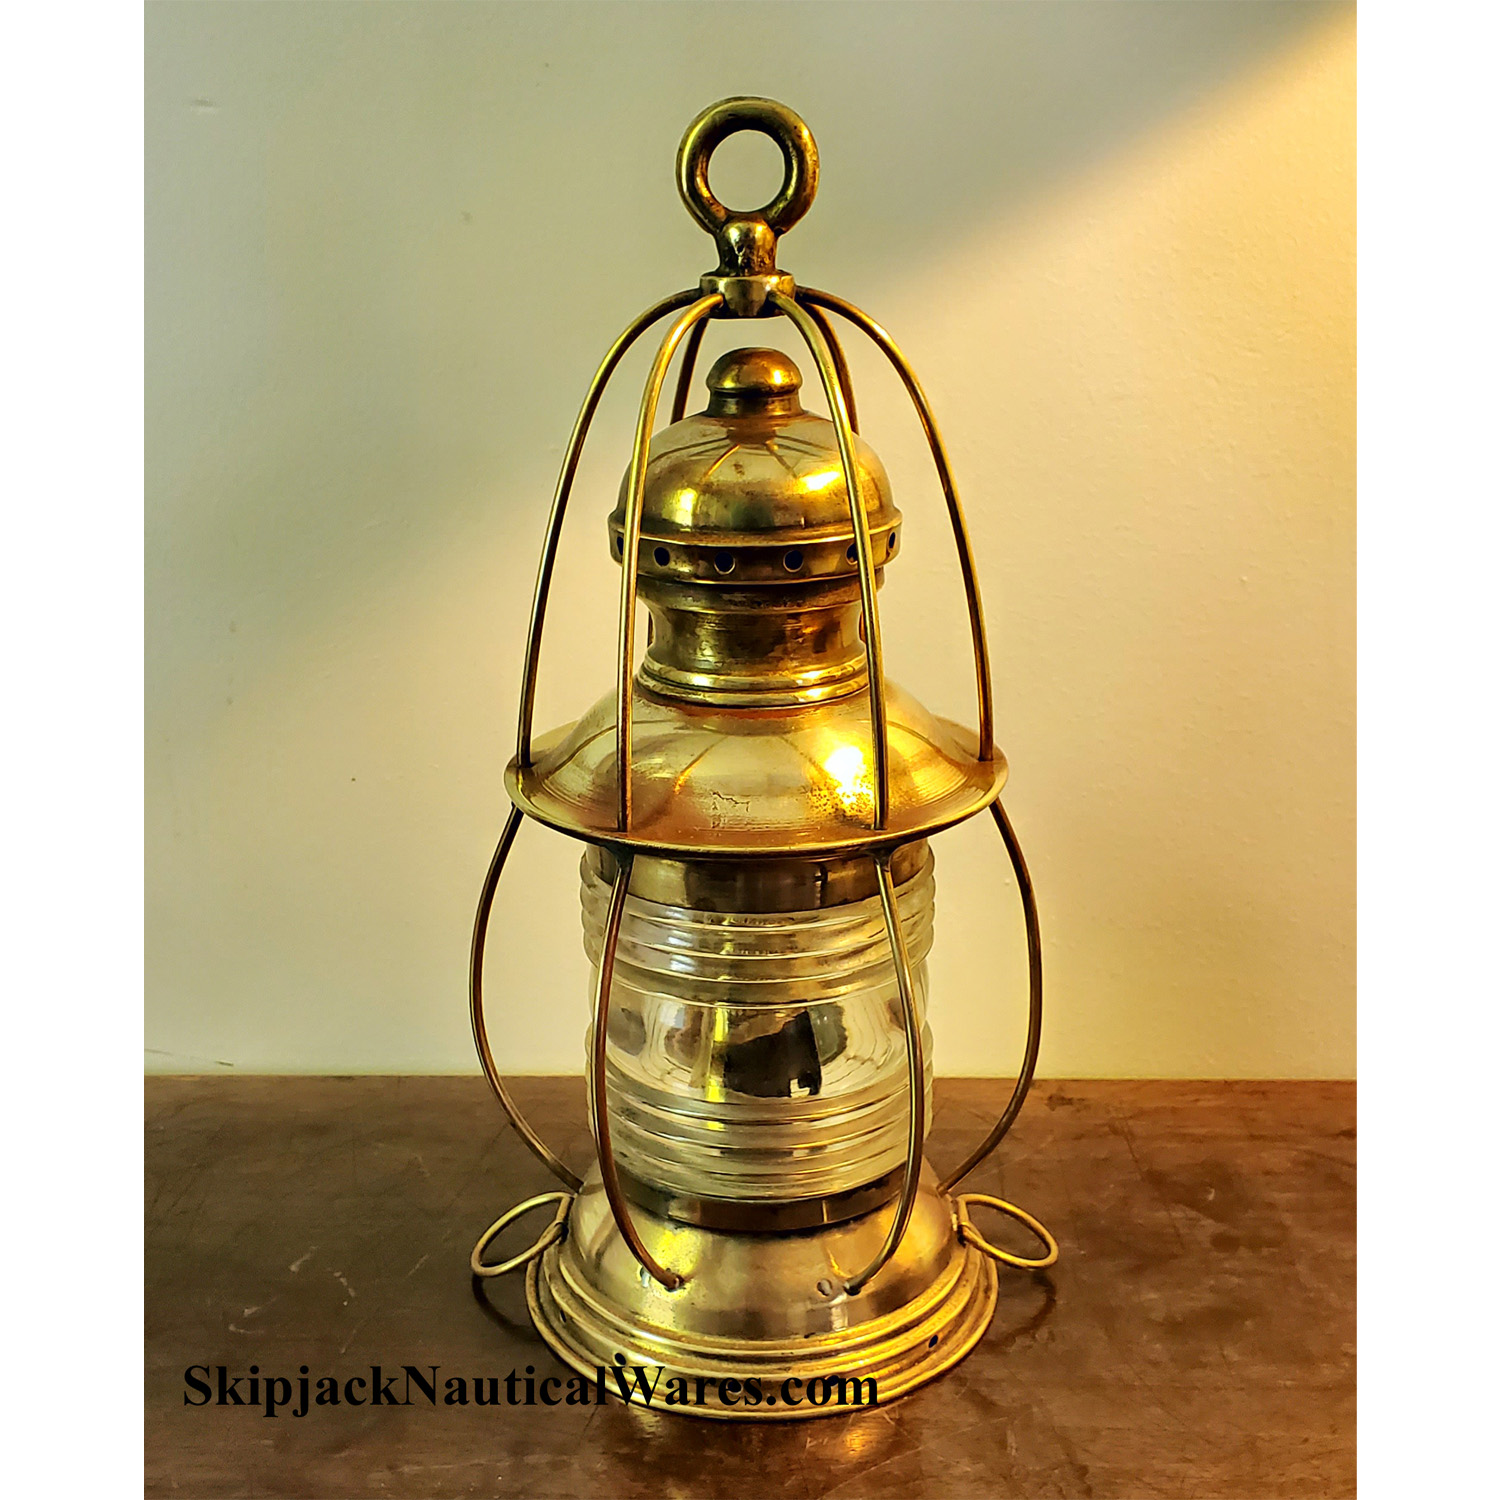 Vintage Brass Birdcage Anchor Lantern: Skipjack Nautical Wares